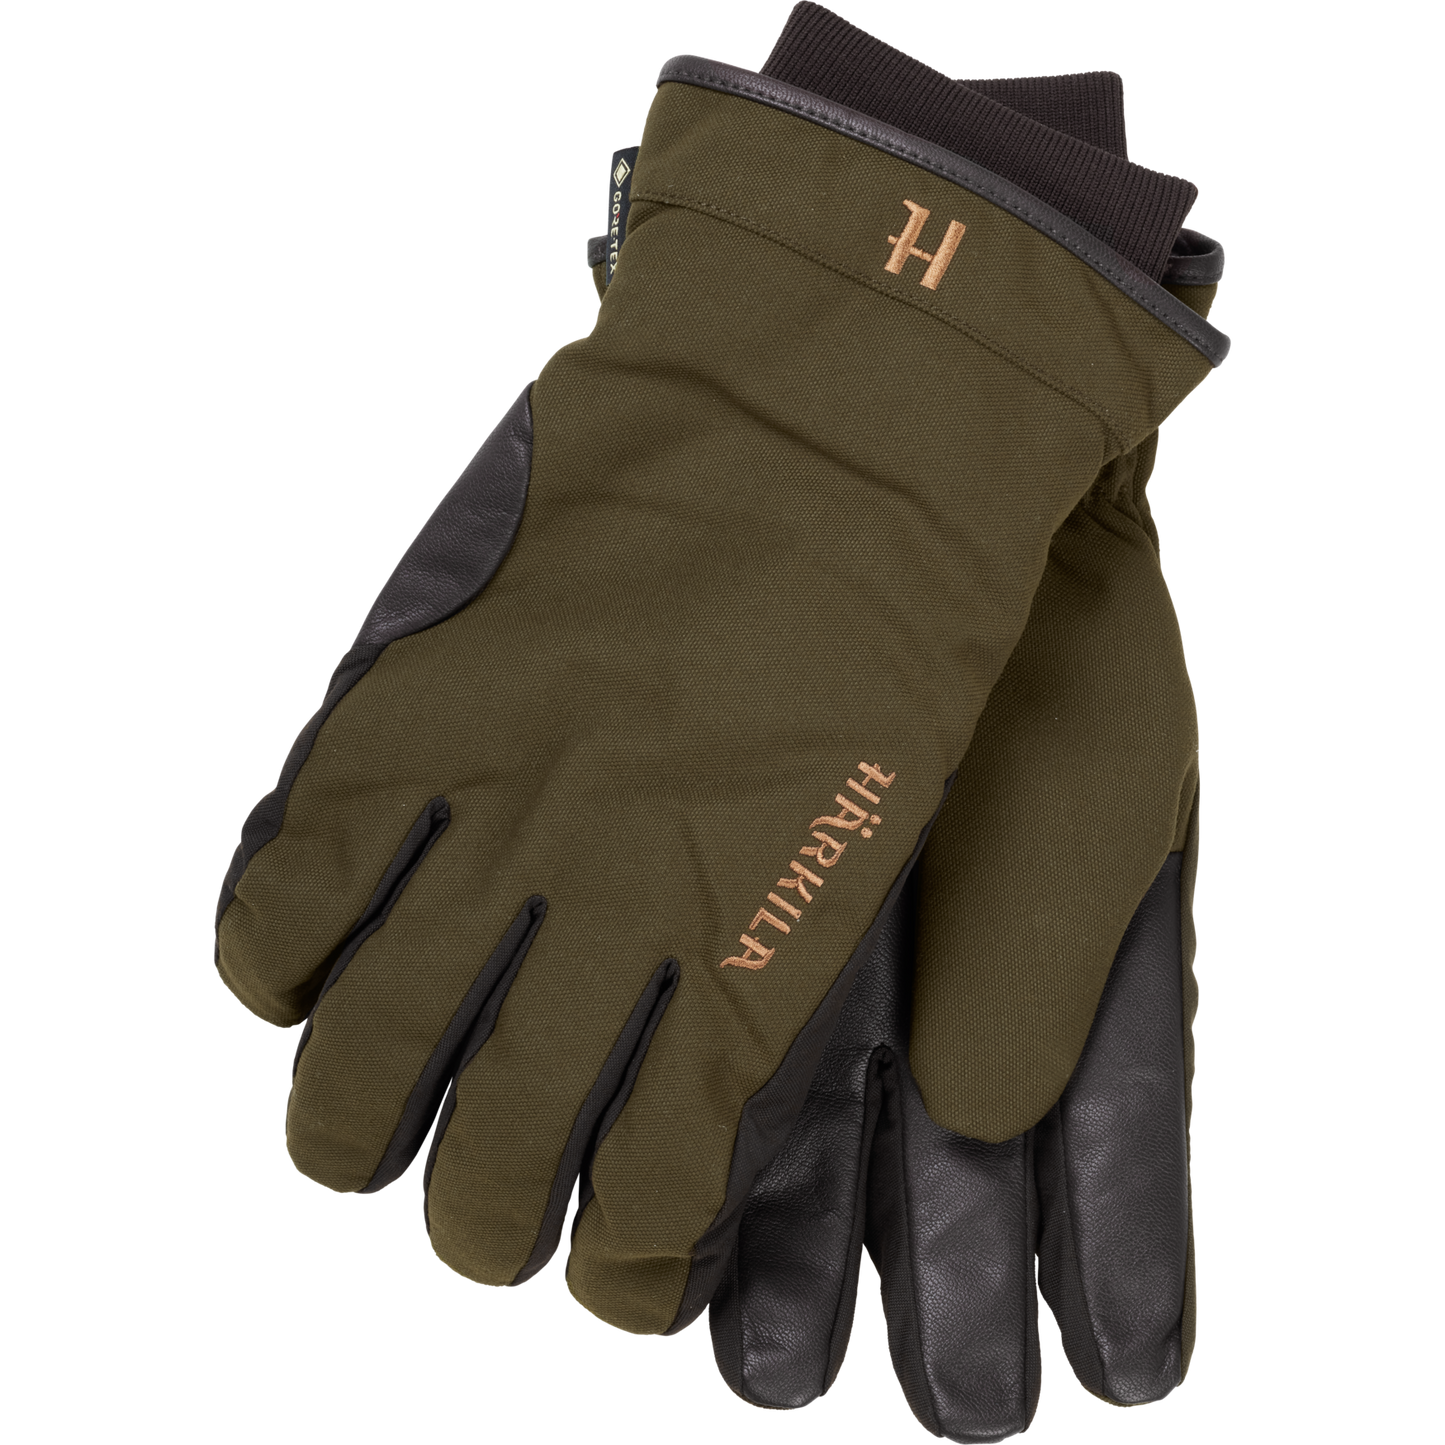 Pro Hunter GTX gloves